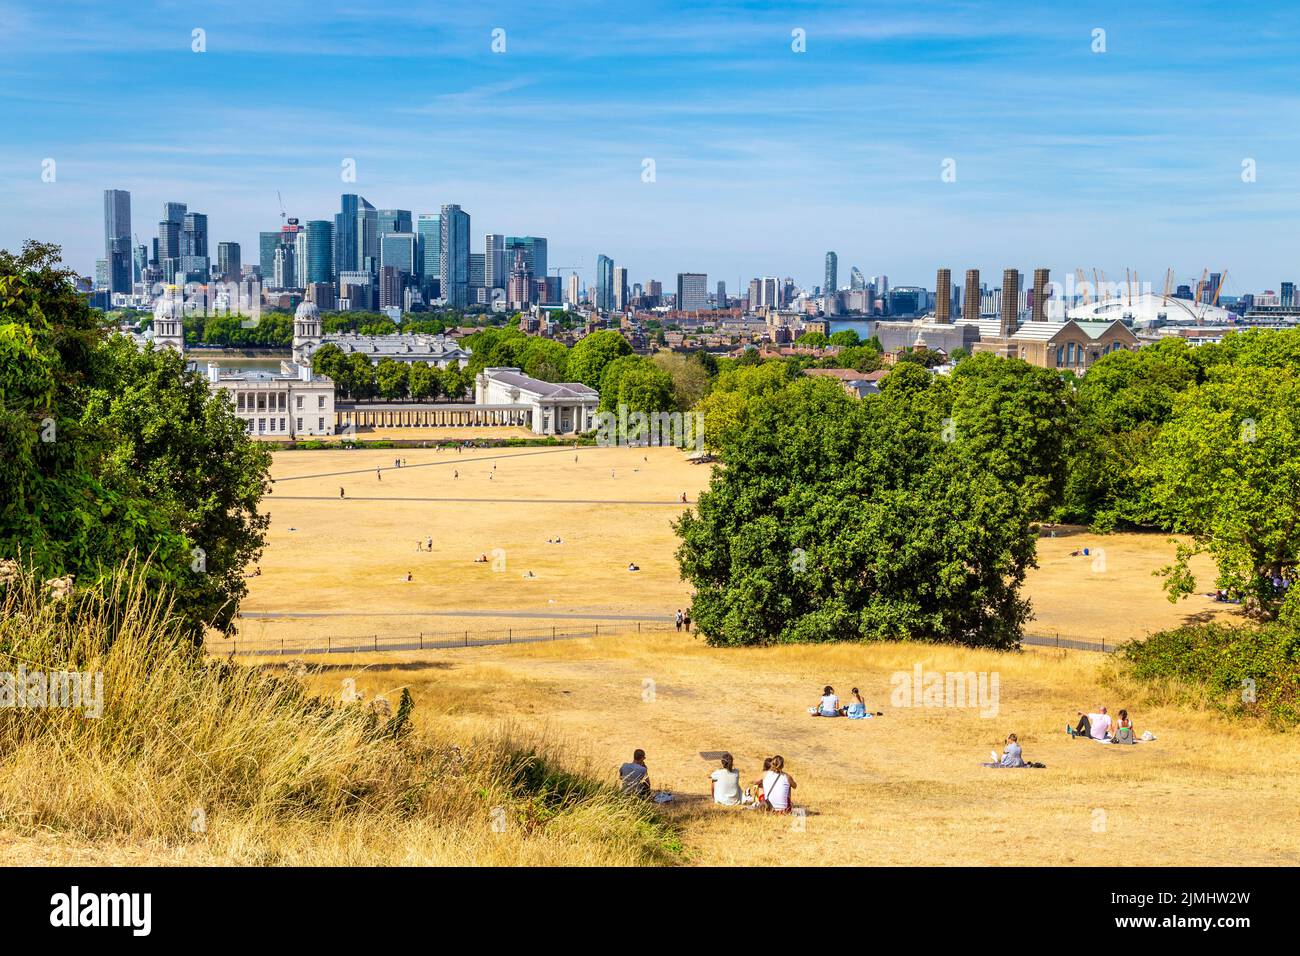 6 agosto 2022 - Londra, Regno Unito - prosciugato le praterie a Greenwich Park dopo una serie di ondate di calore e temperature elevate record, la città di fronte alla siccità e le misure di razionamento delle acque Foto Stock